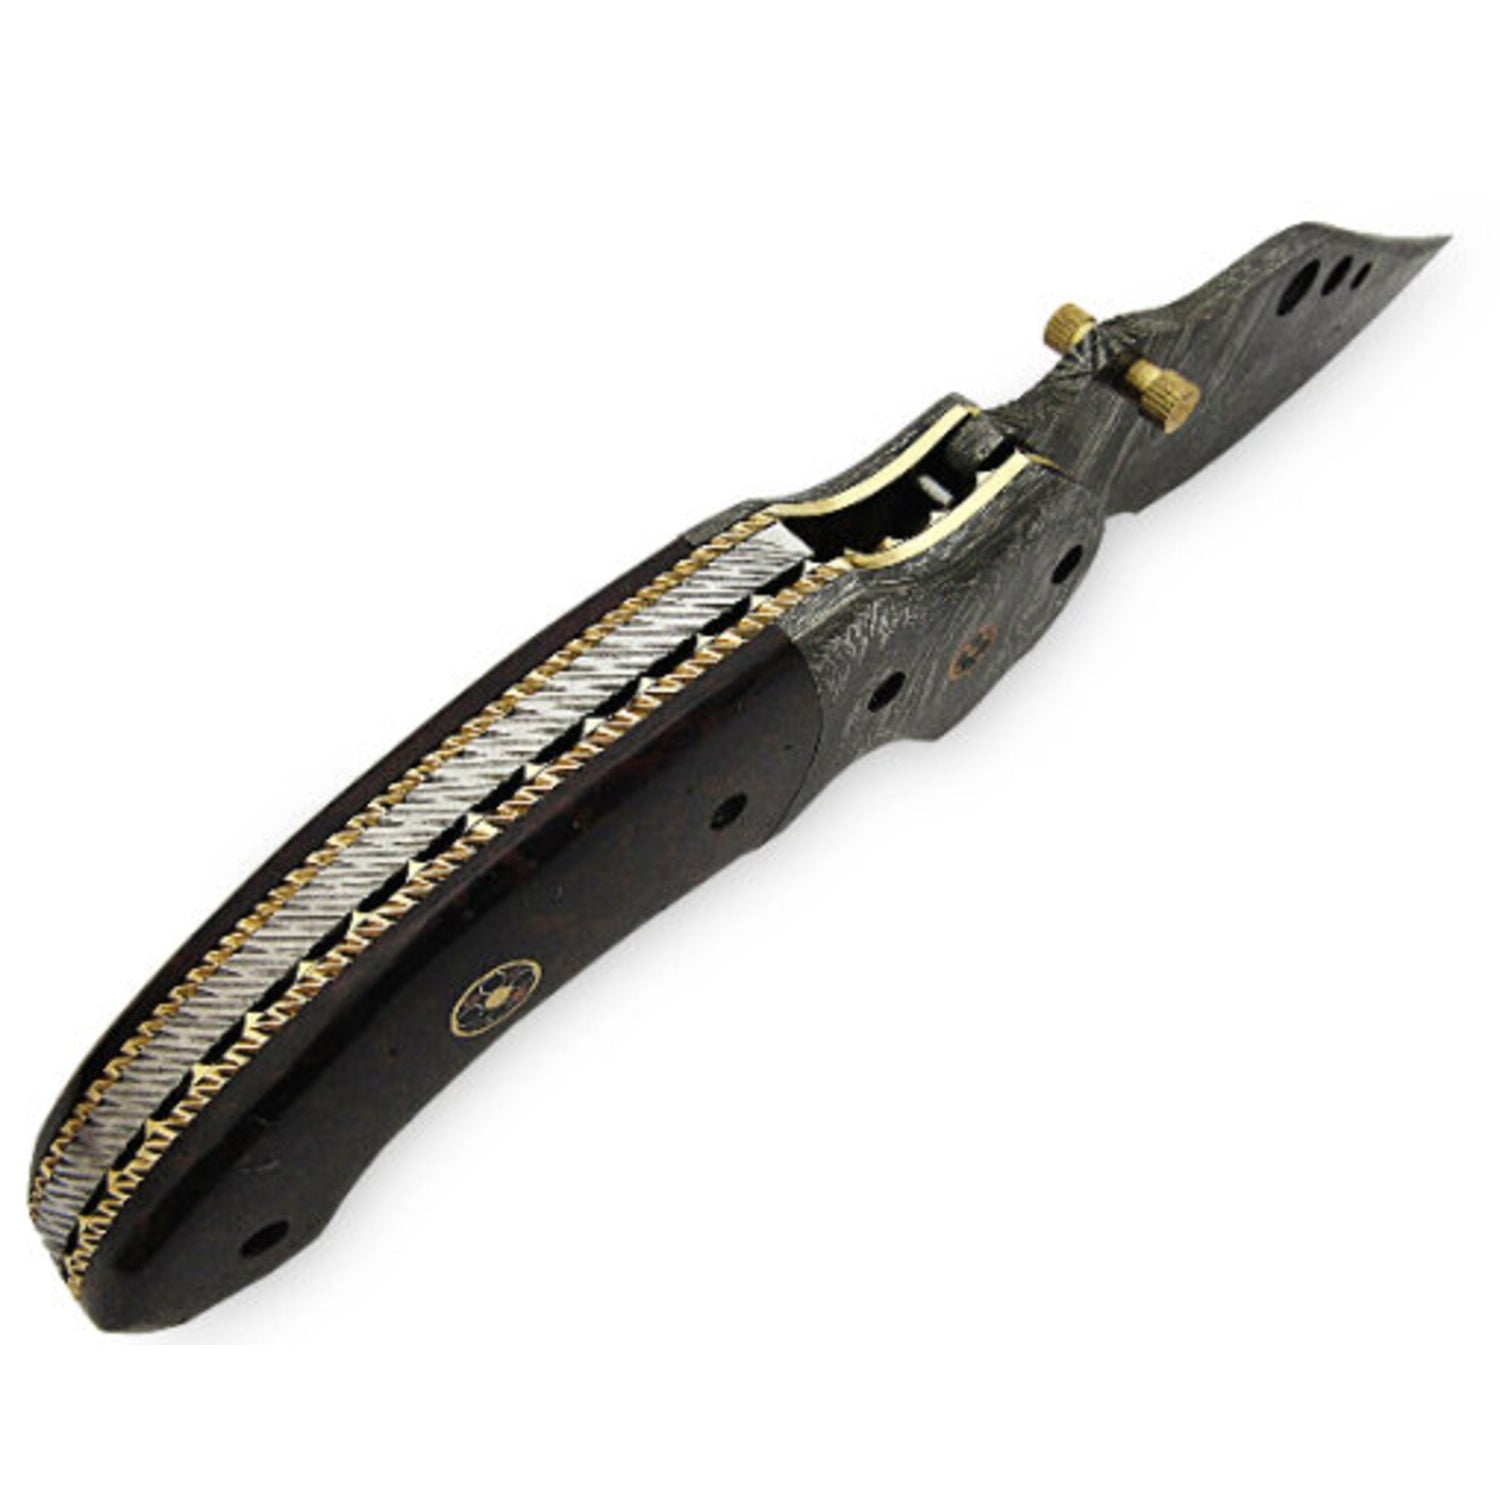 Trexal Damascus Steel Foldable Pocket Knife - Black - Notbrand